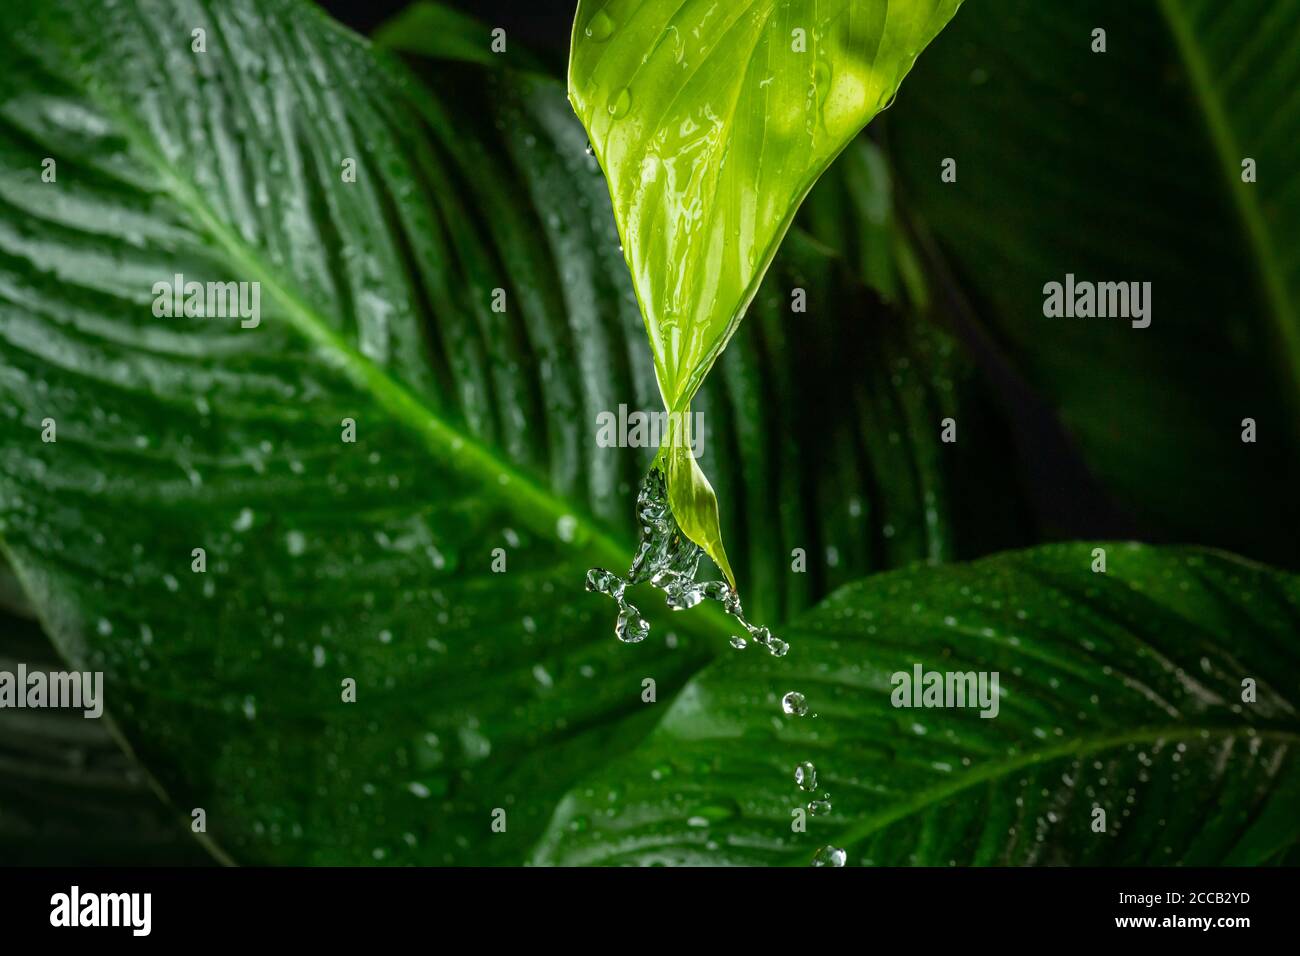 Regenwasser tropft von grünen Blatt Detail Stockfoto